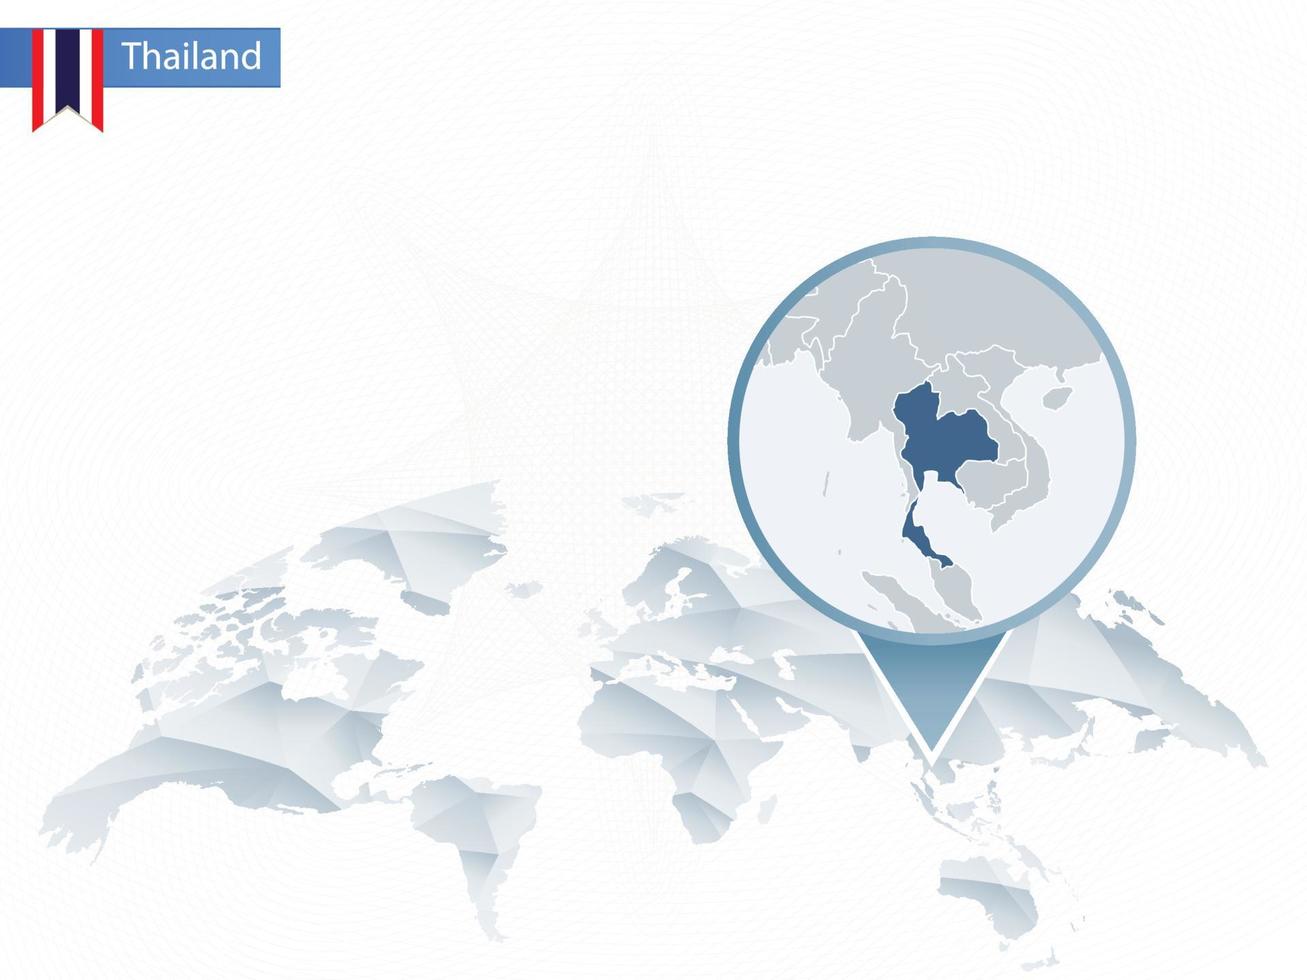 carte du monde arrondie abstraite avec carte détaillée de la thaïlande épinglée. vecteur